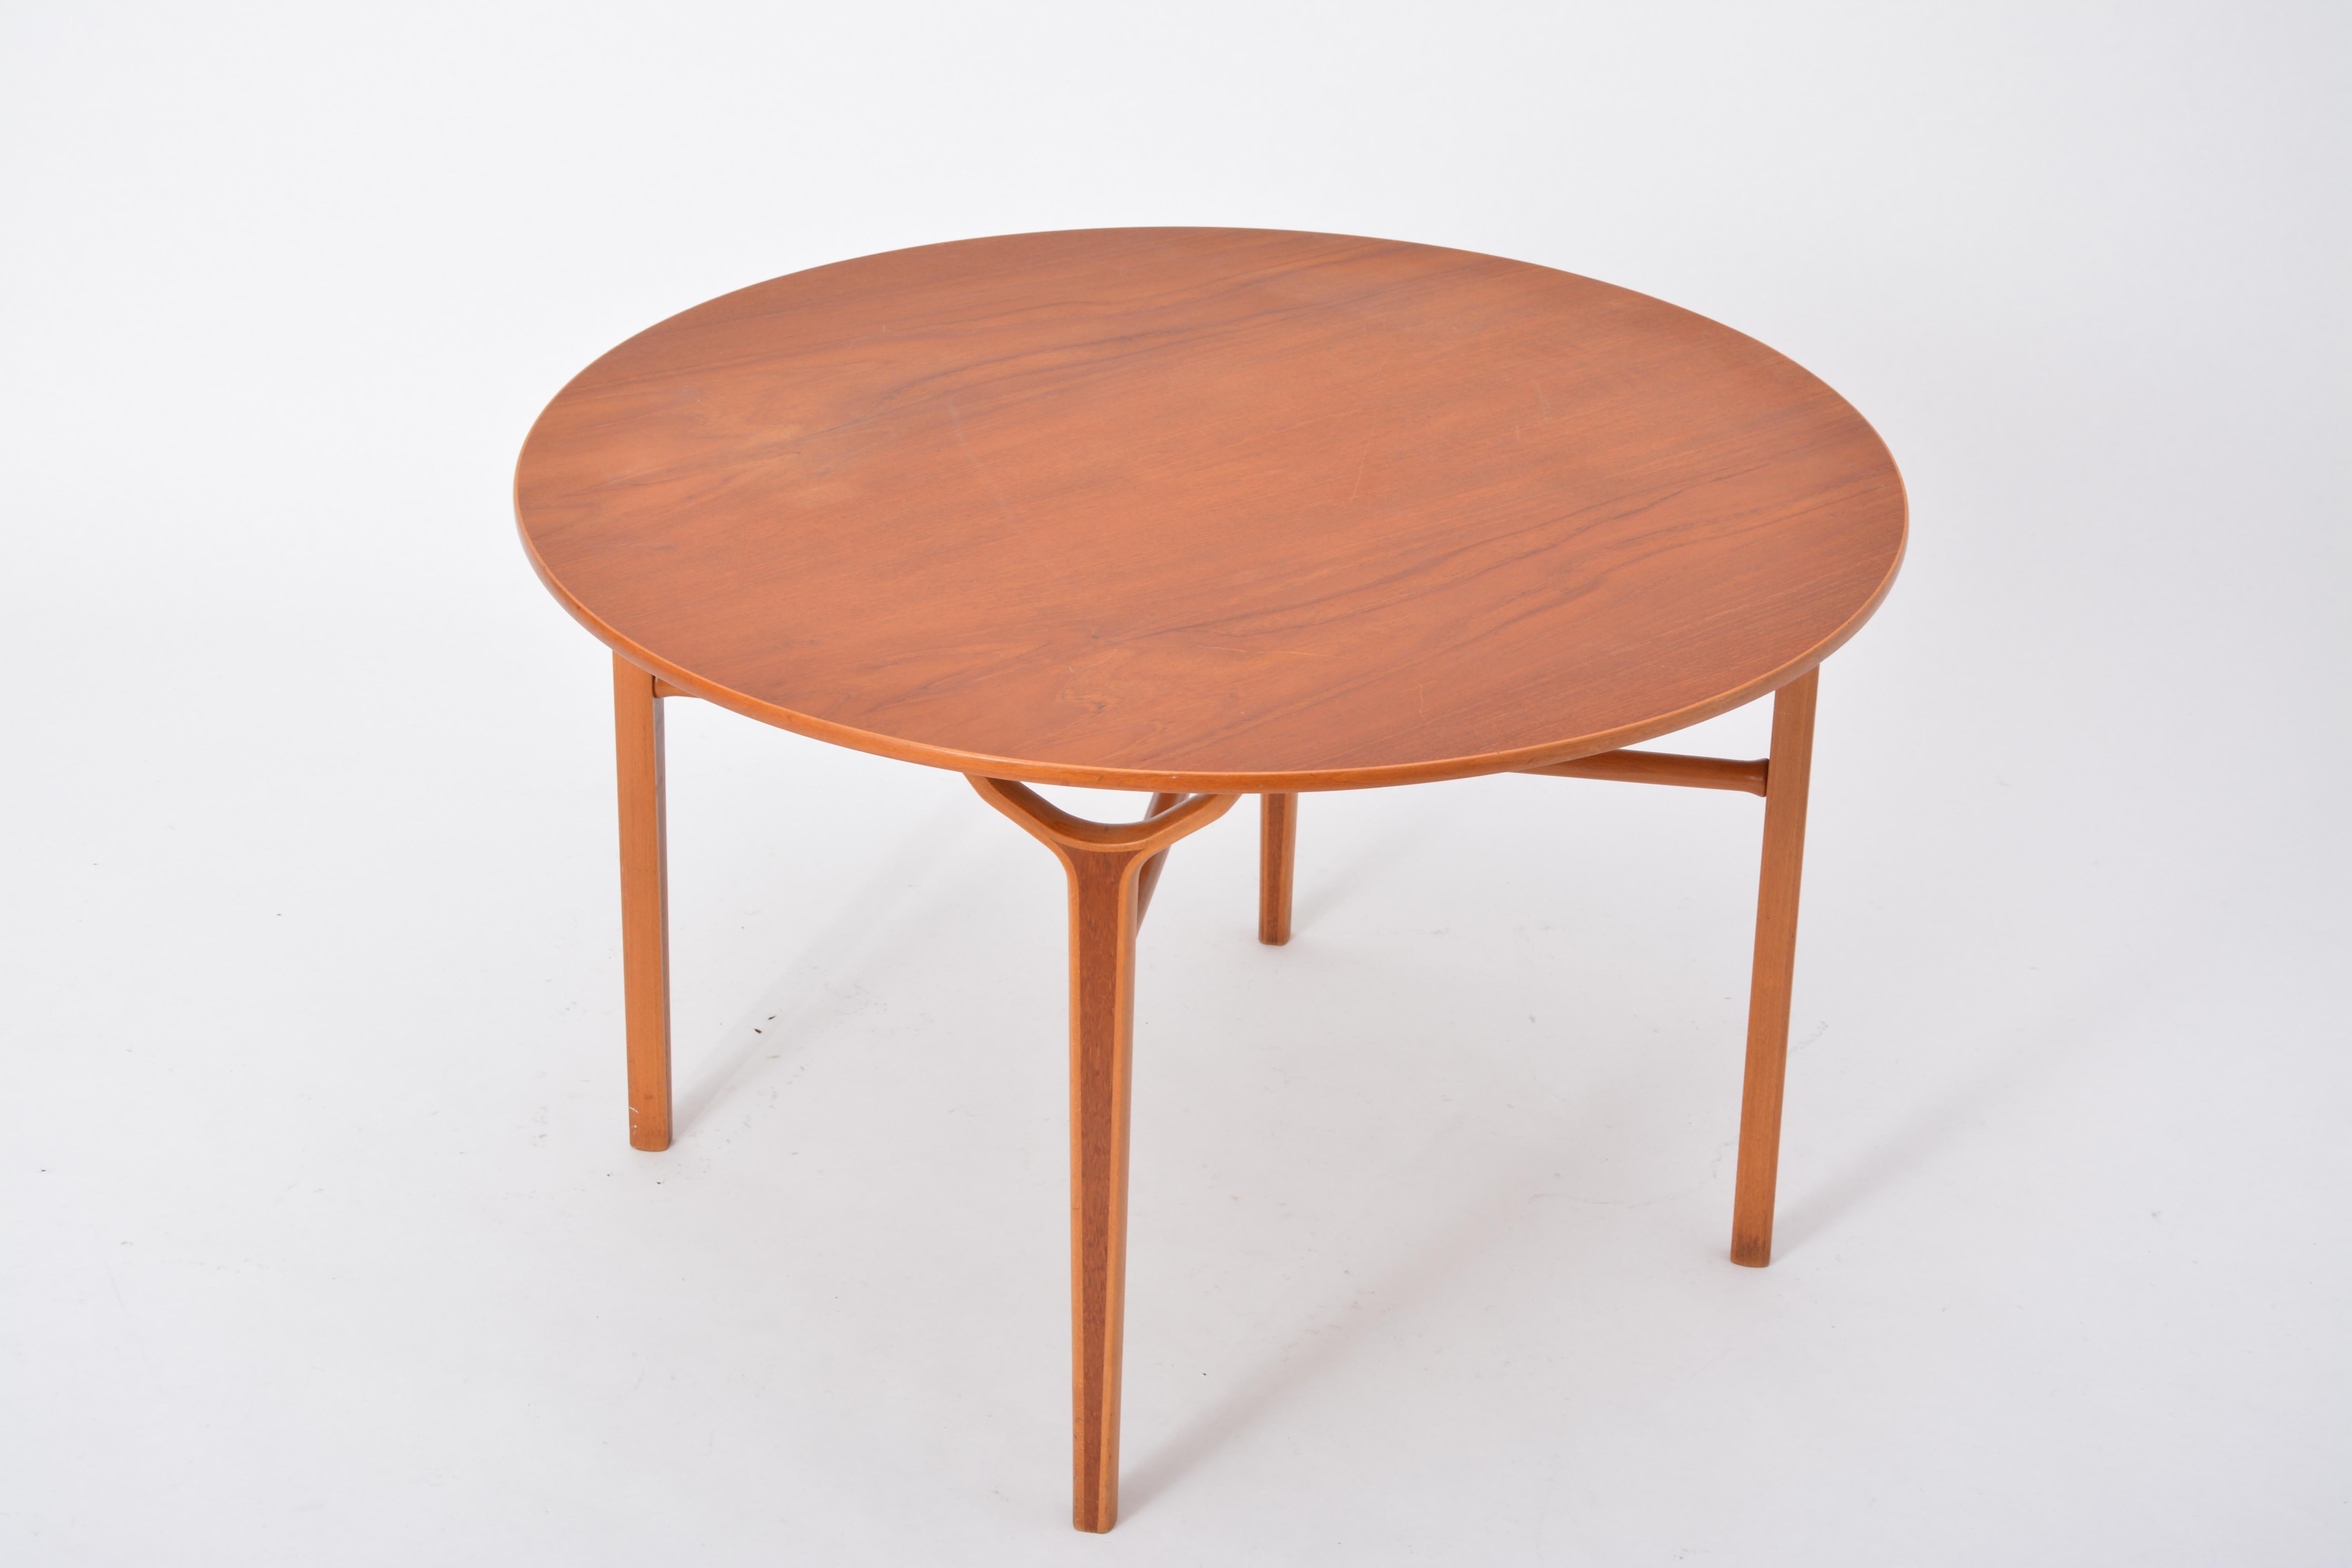 Dänischer Tisch Ax aus der Jahrhundertmitte von Peter Hvidt und Orla Mølgaard-Nielsen

Dieser Couchtisch wurde in den 1950er Jahren von Peter Hvidt und Orla Molgaard Nielsen entworfen. Er stammt aus der renommierten Ax-Serie, die für Möbel mit